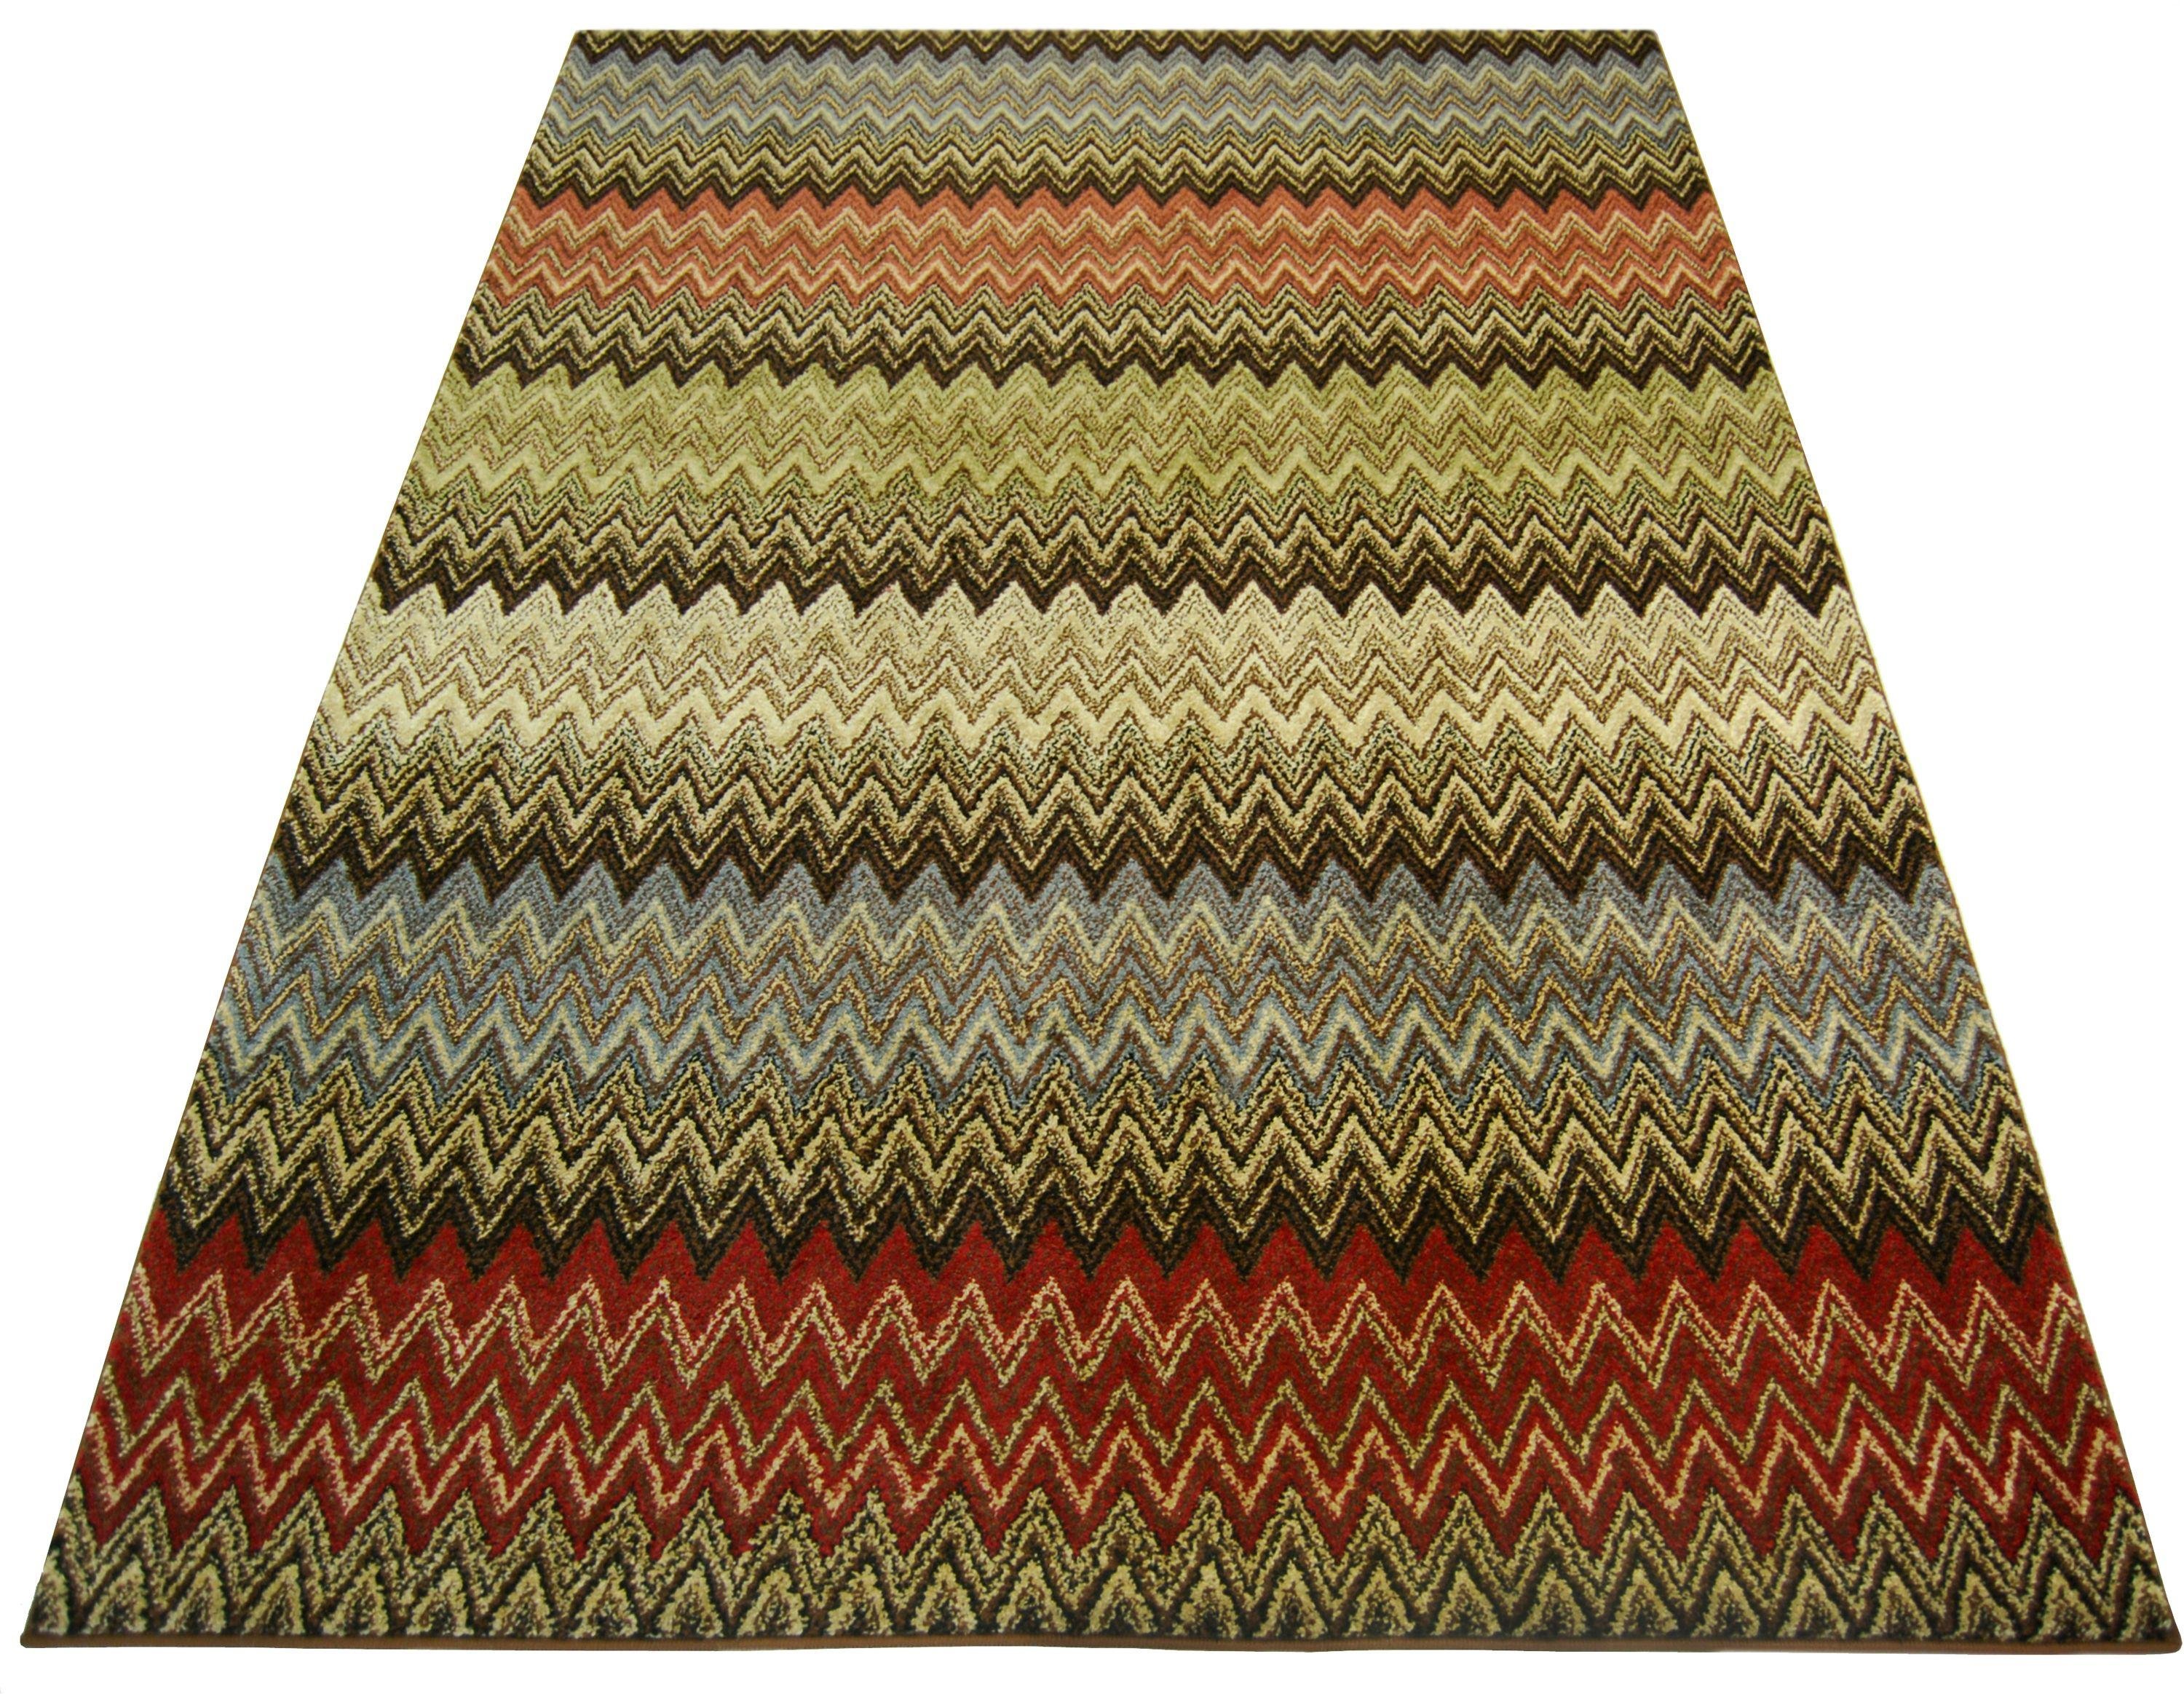 Spirit Zigzag Rug - 120x170cm - Multicoloured